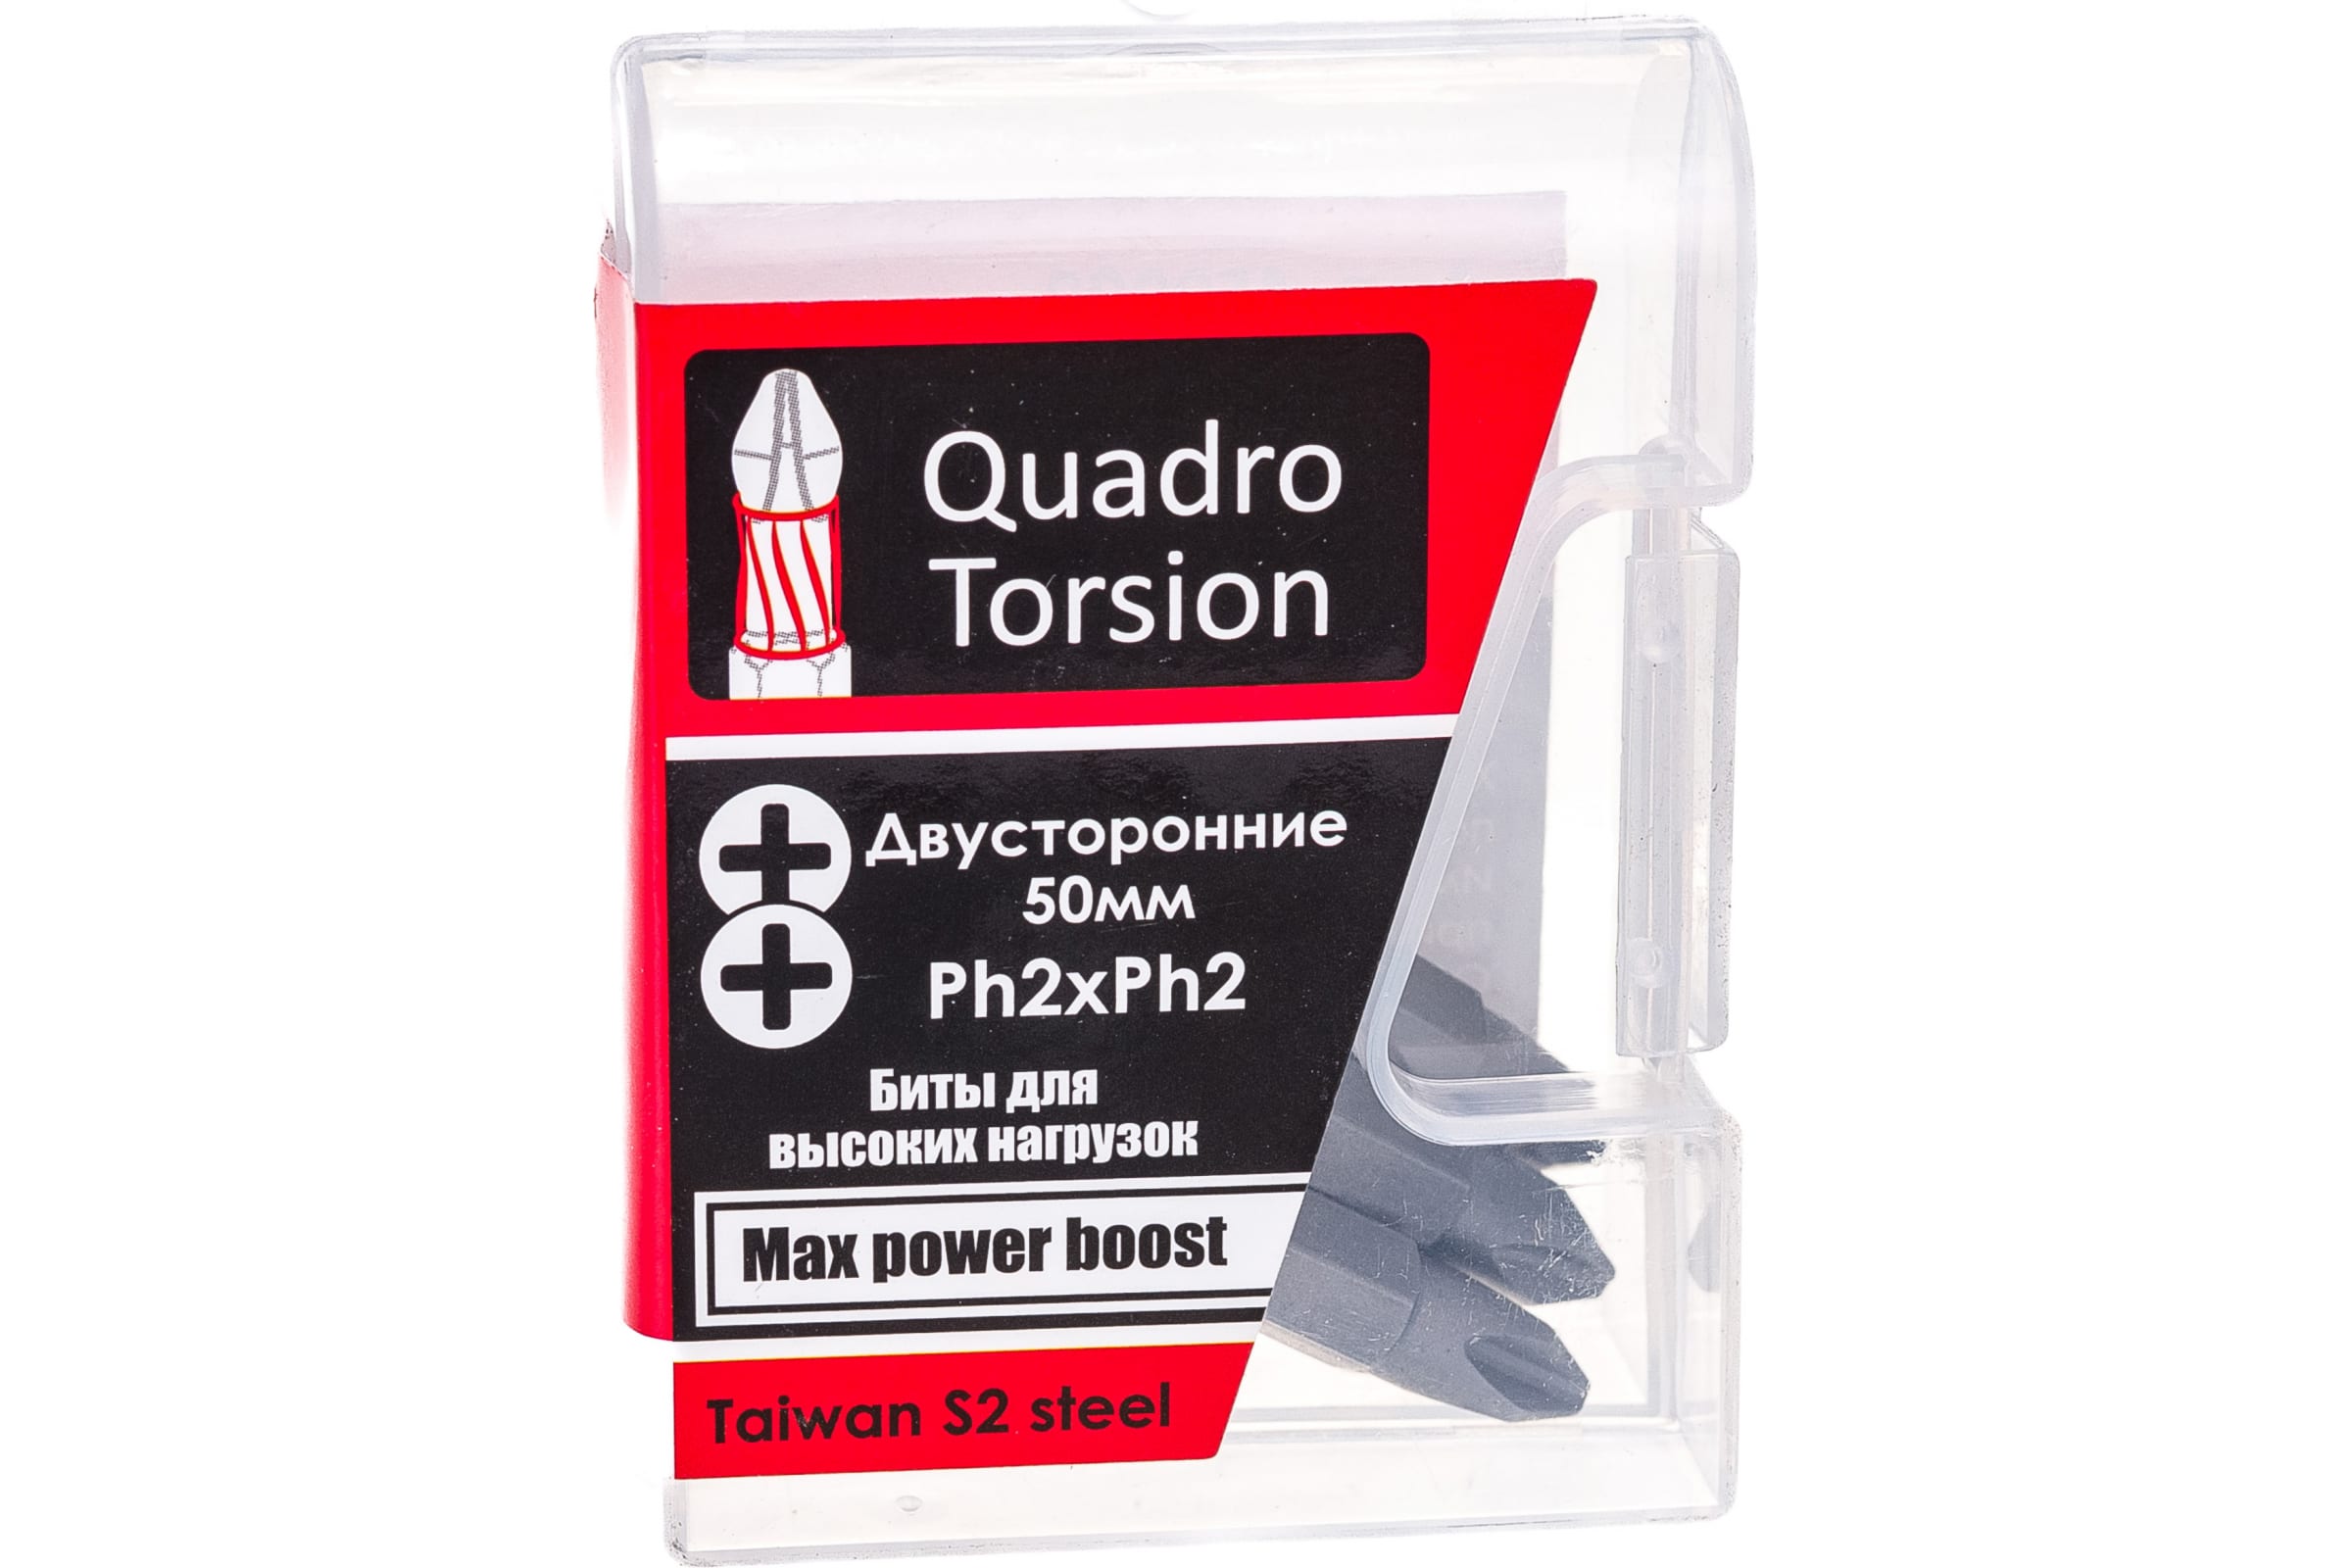 Quadro Torsion бита 1/4 двусторонняя Ph2xPh2 - 50мм 5шт./кор. 450022 двусторонняя бита quadro torsion